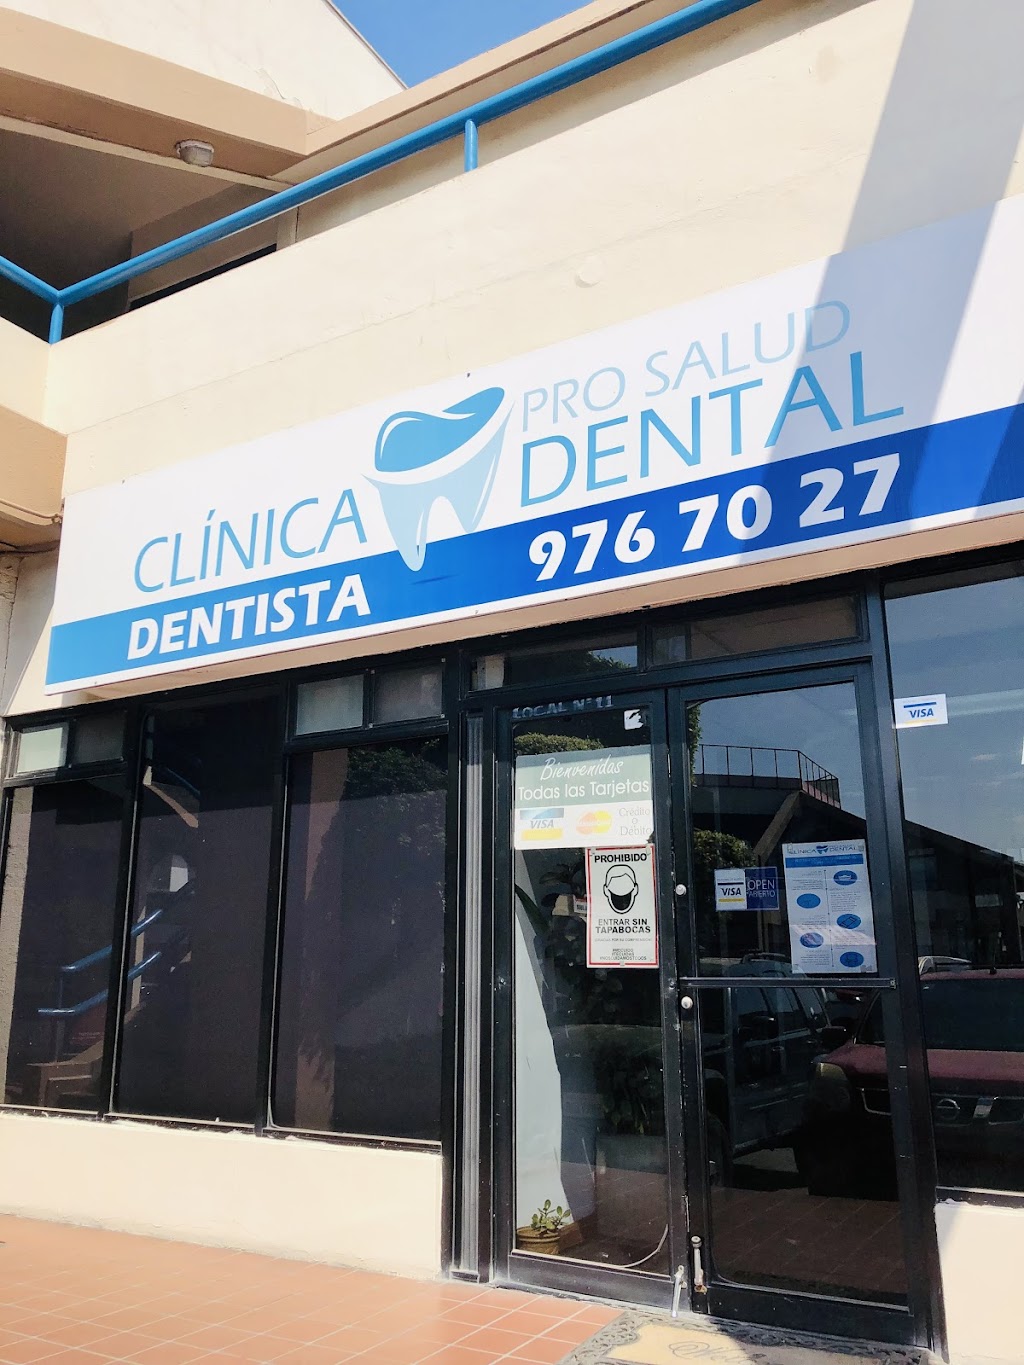 Clínica Prosalud Dental | Blvr. Lázaro Cárdenas 5100 -11, La Mesa, Gas y Anexas, 22105 Tijuana, B.C., Mexico | Phone: 664 976 7027